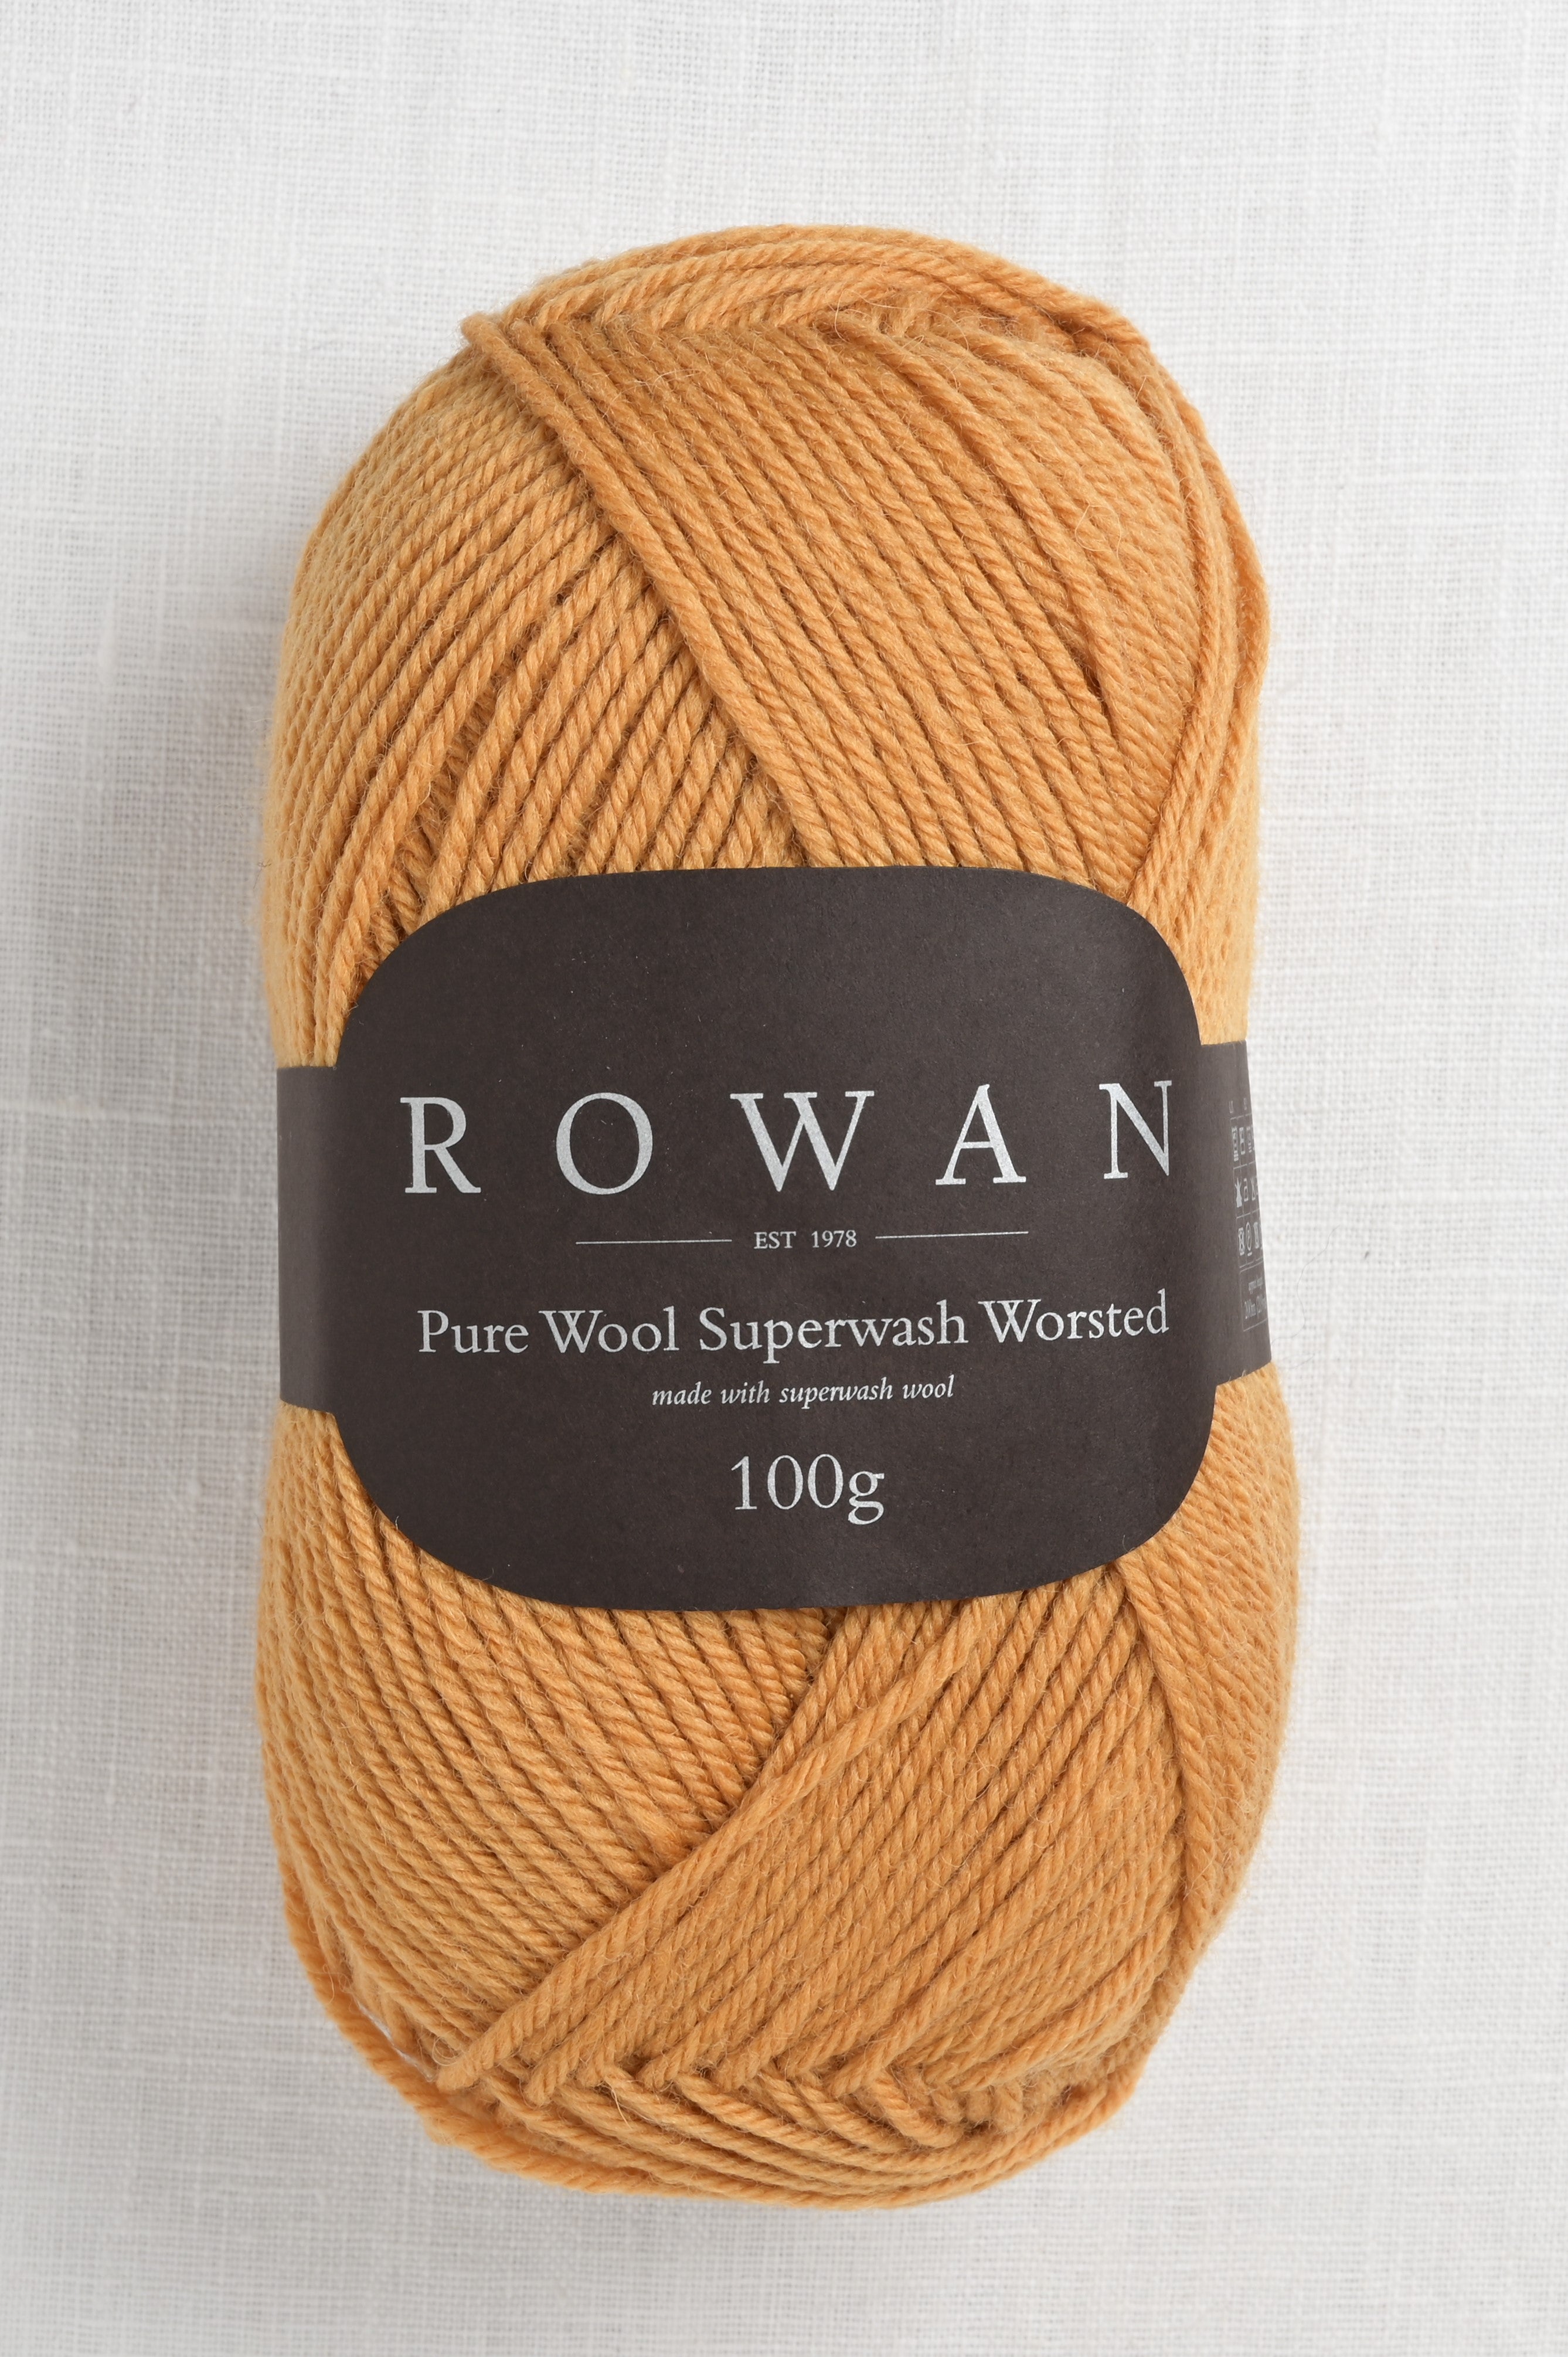 An ode to alpaca wool